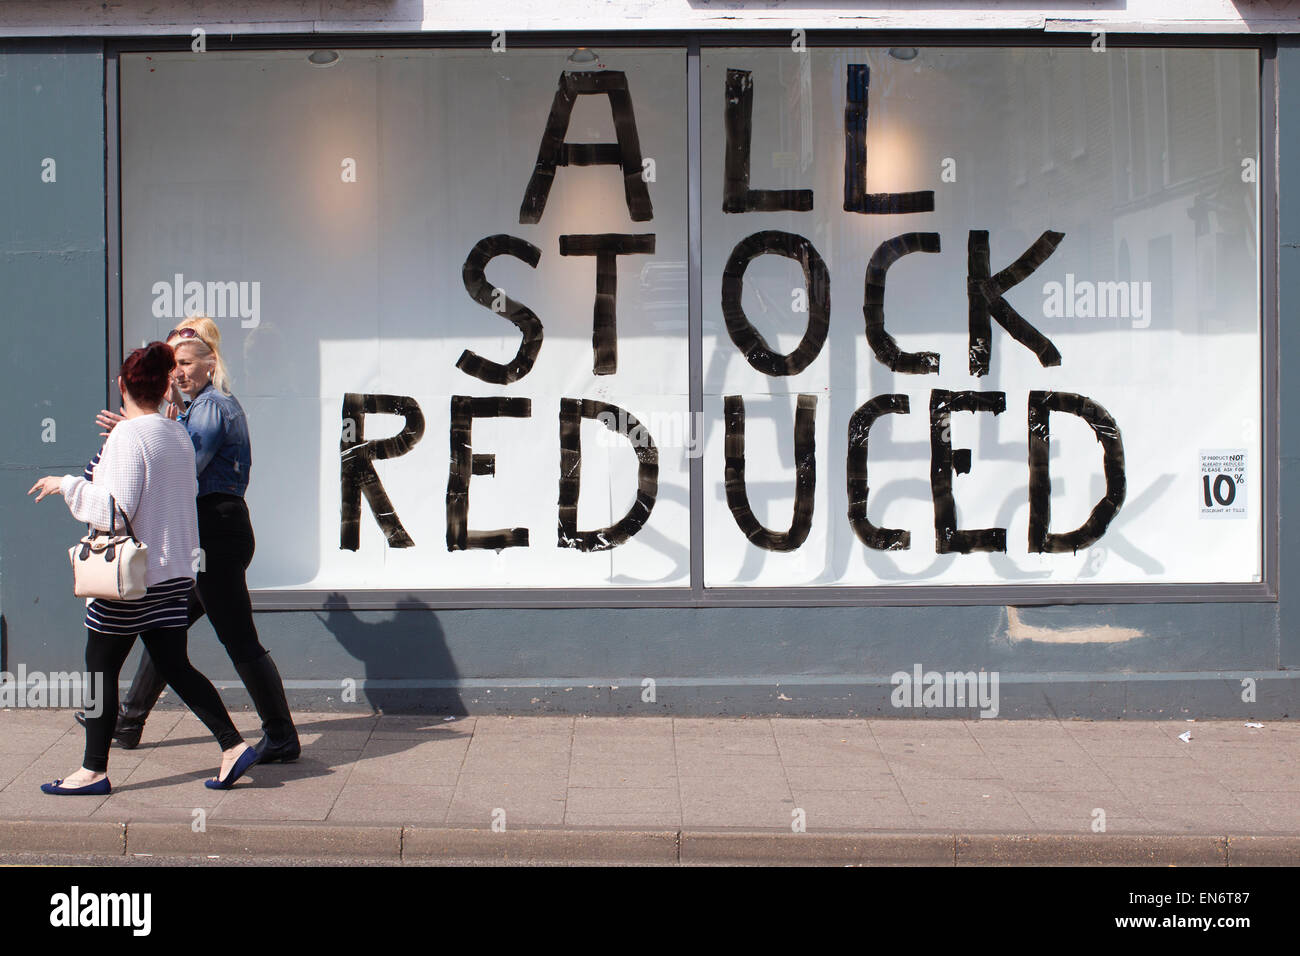 Todas las existencias reducidas firmar en High street escaparate donde el crecimiento económico muestra signos de desaceleración, Ramsgate, UK Foto de stock